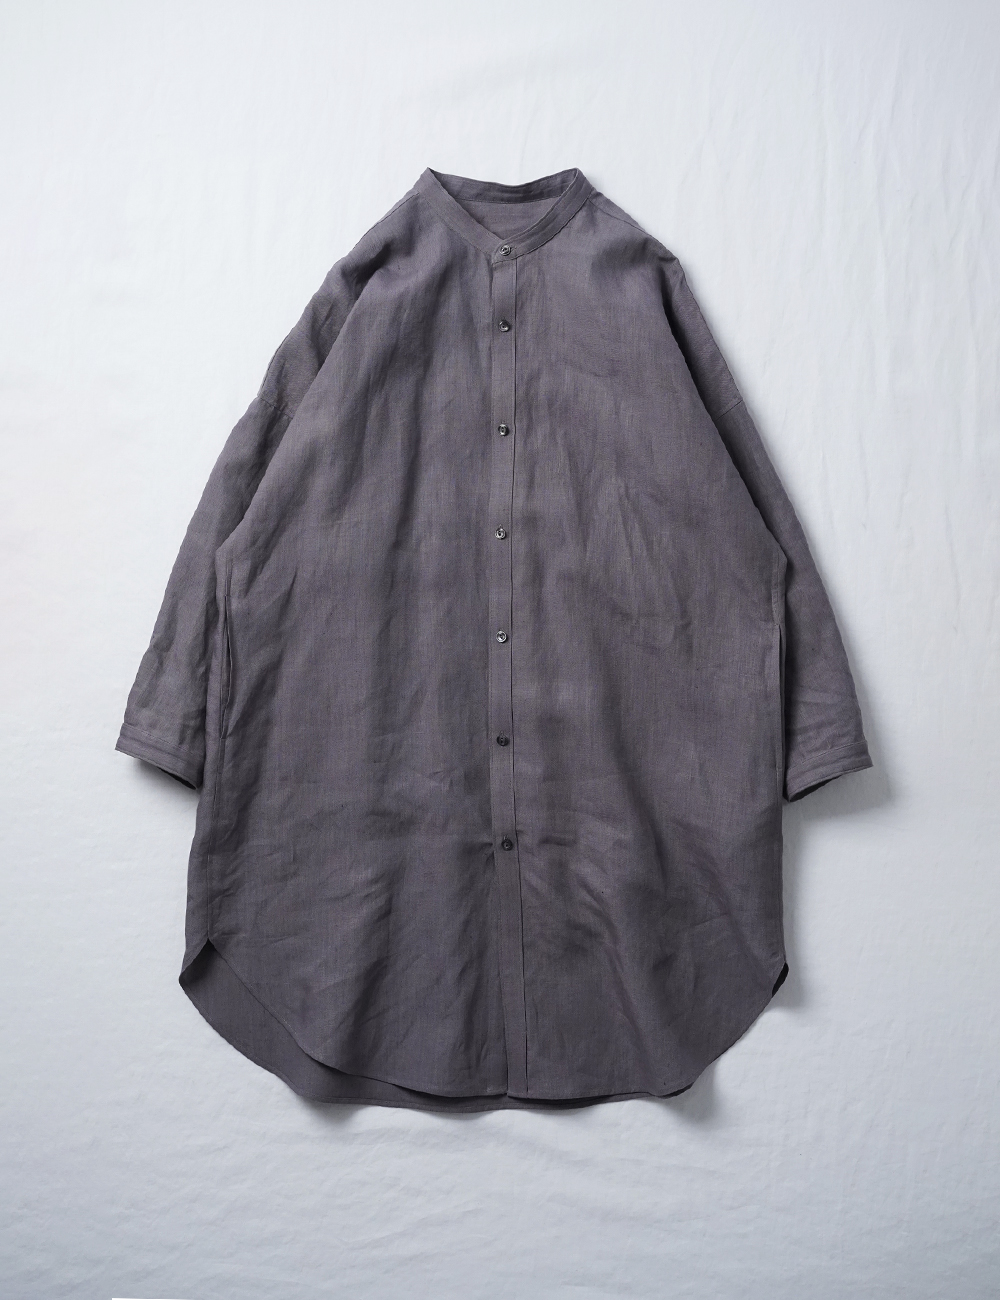 【リネンシャツワンピース】曲線美に見惚れるビックシャツドレス /茶鼠t021k-cnz1